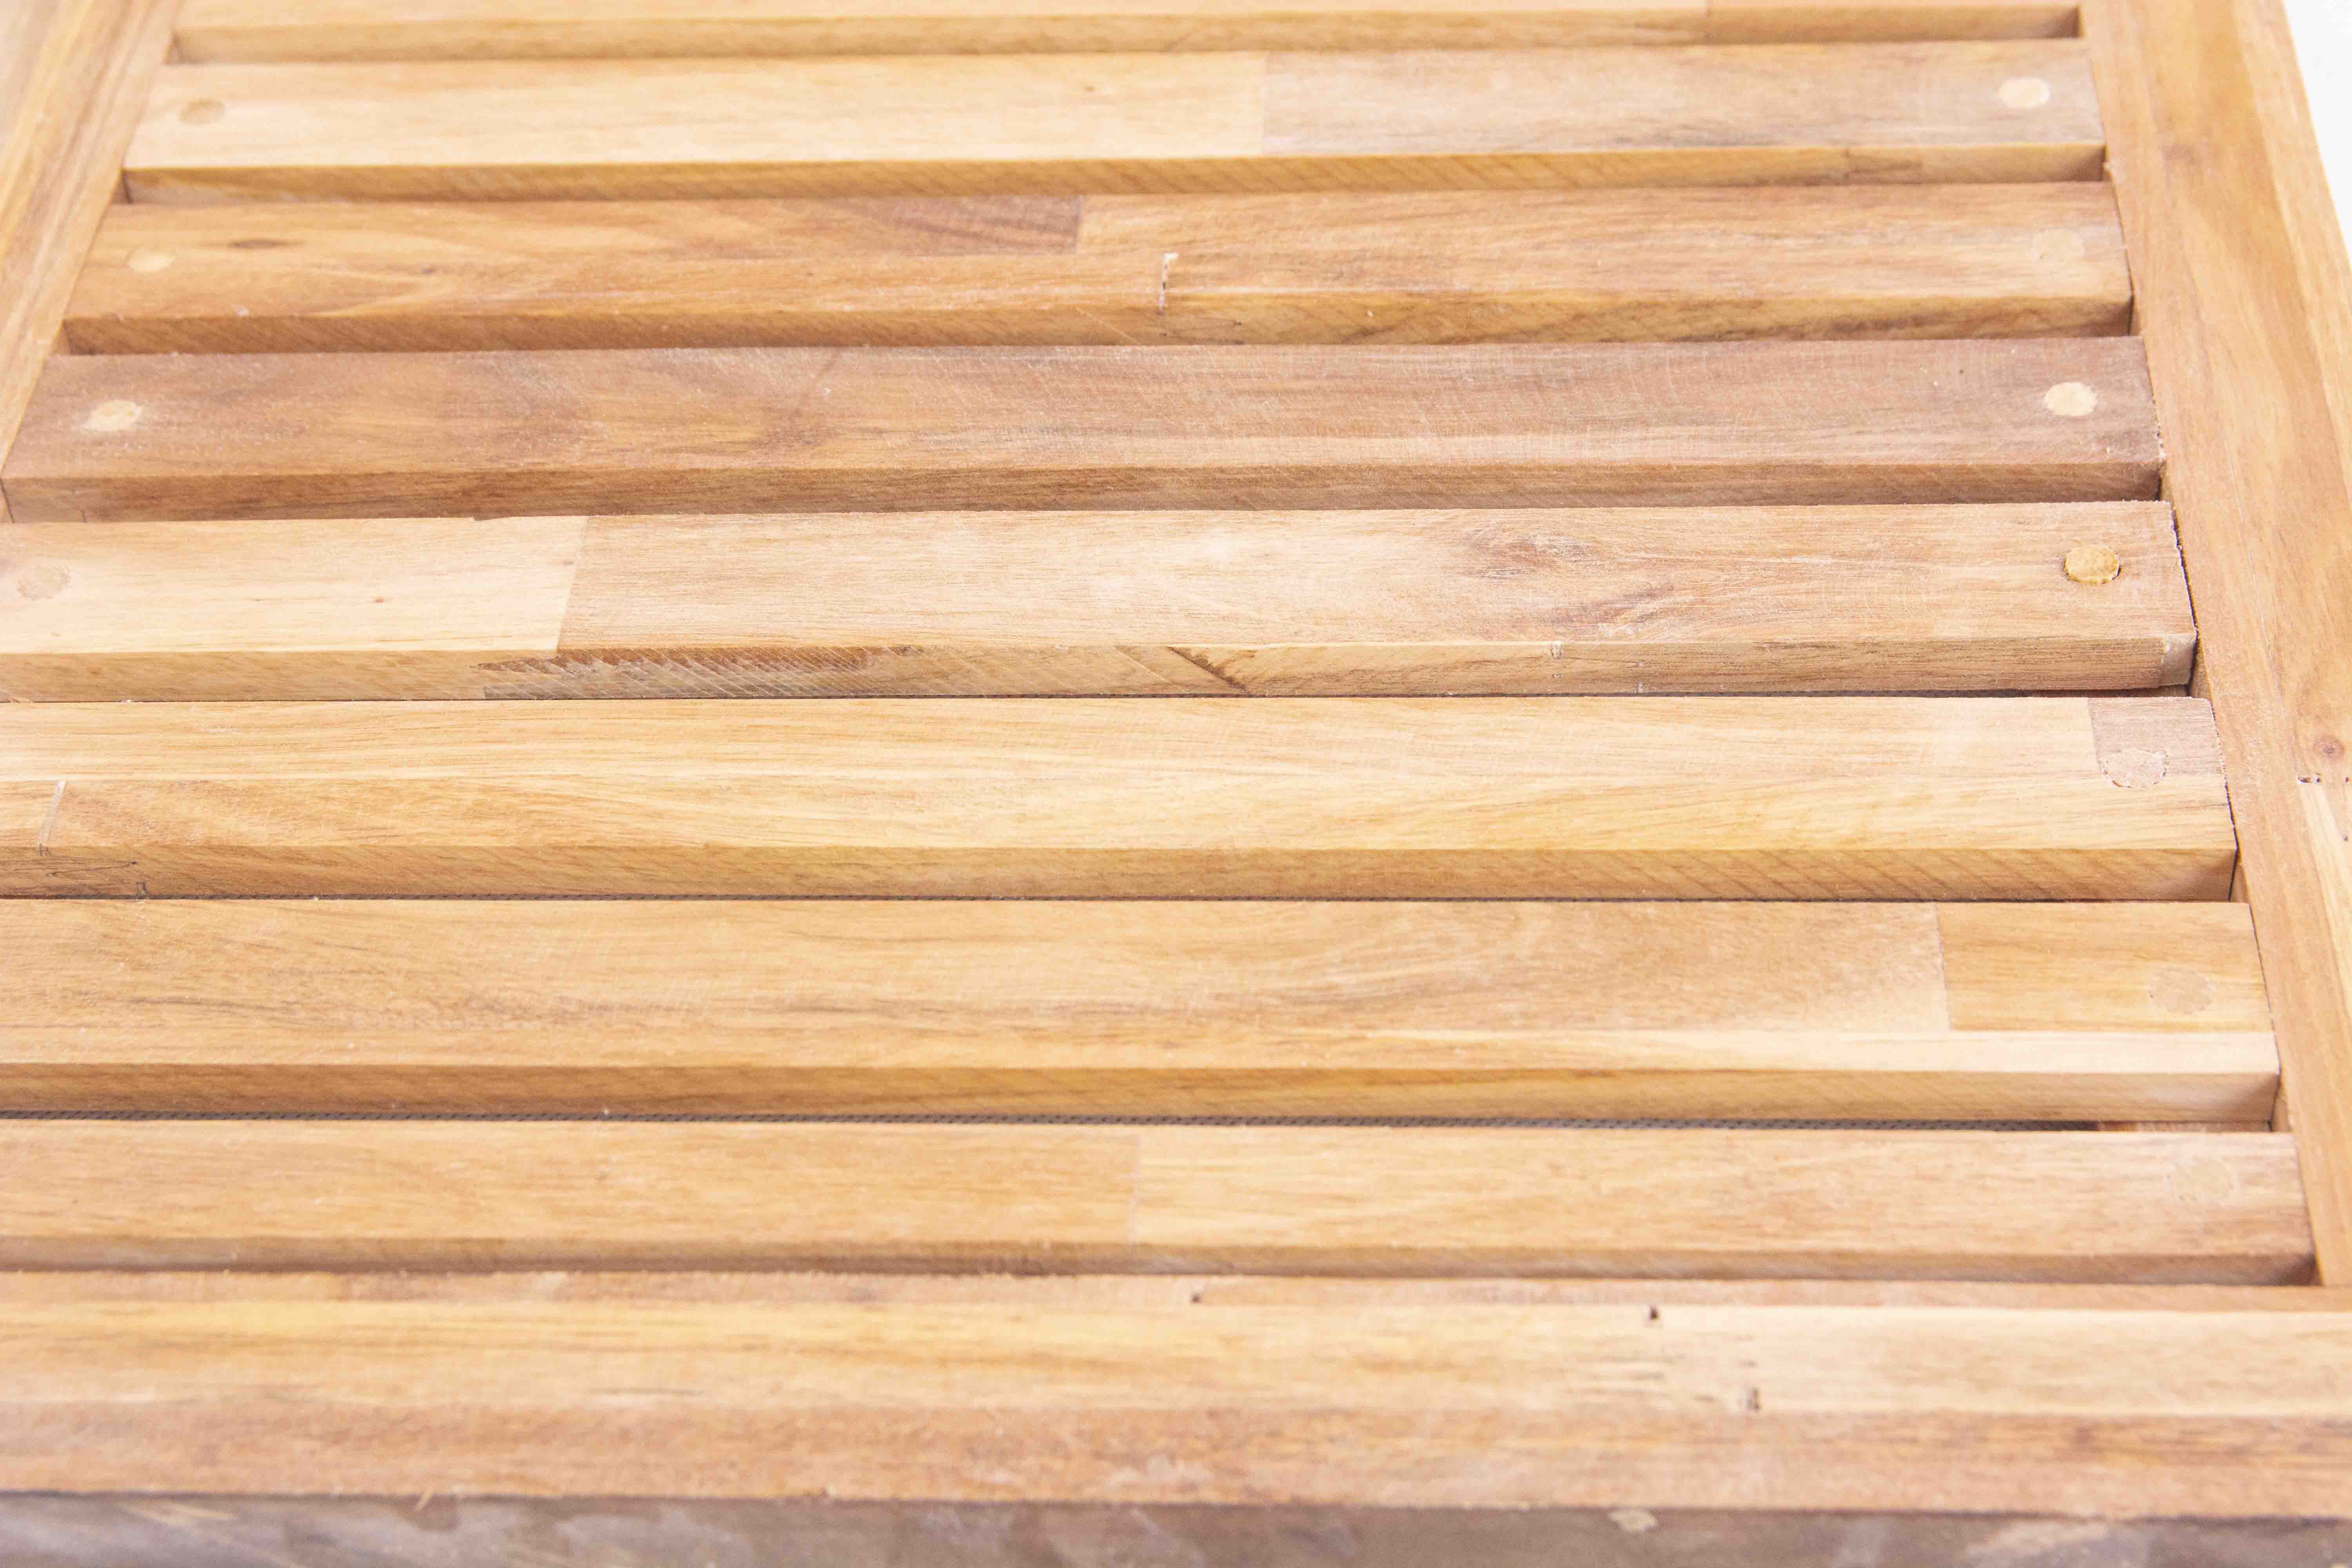 Thảm chống trơn nhà tắm được sản xuất từ gỗ mật hồng tự nhiên với thiết kế thông minh, tối giản